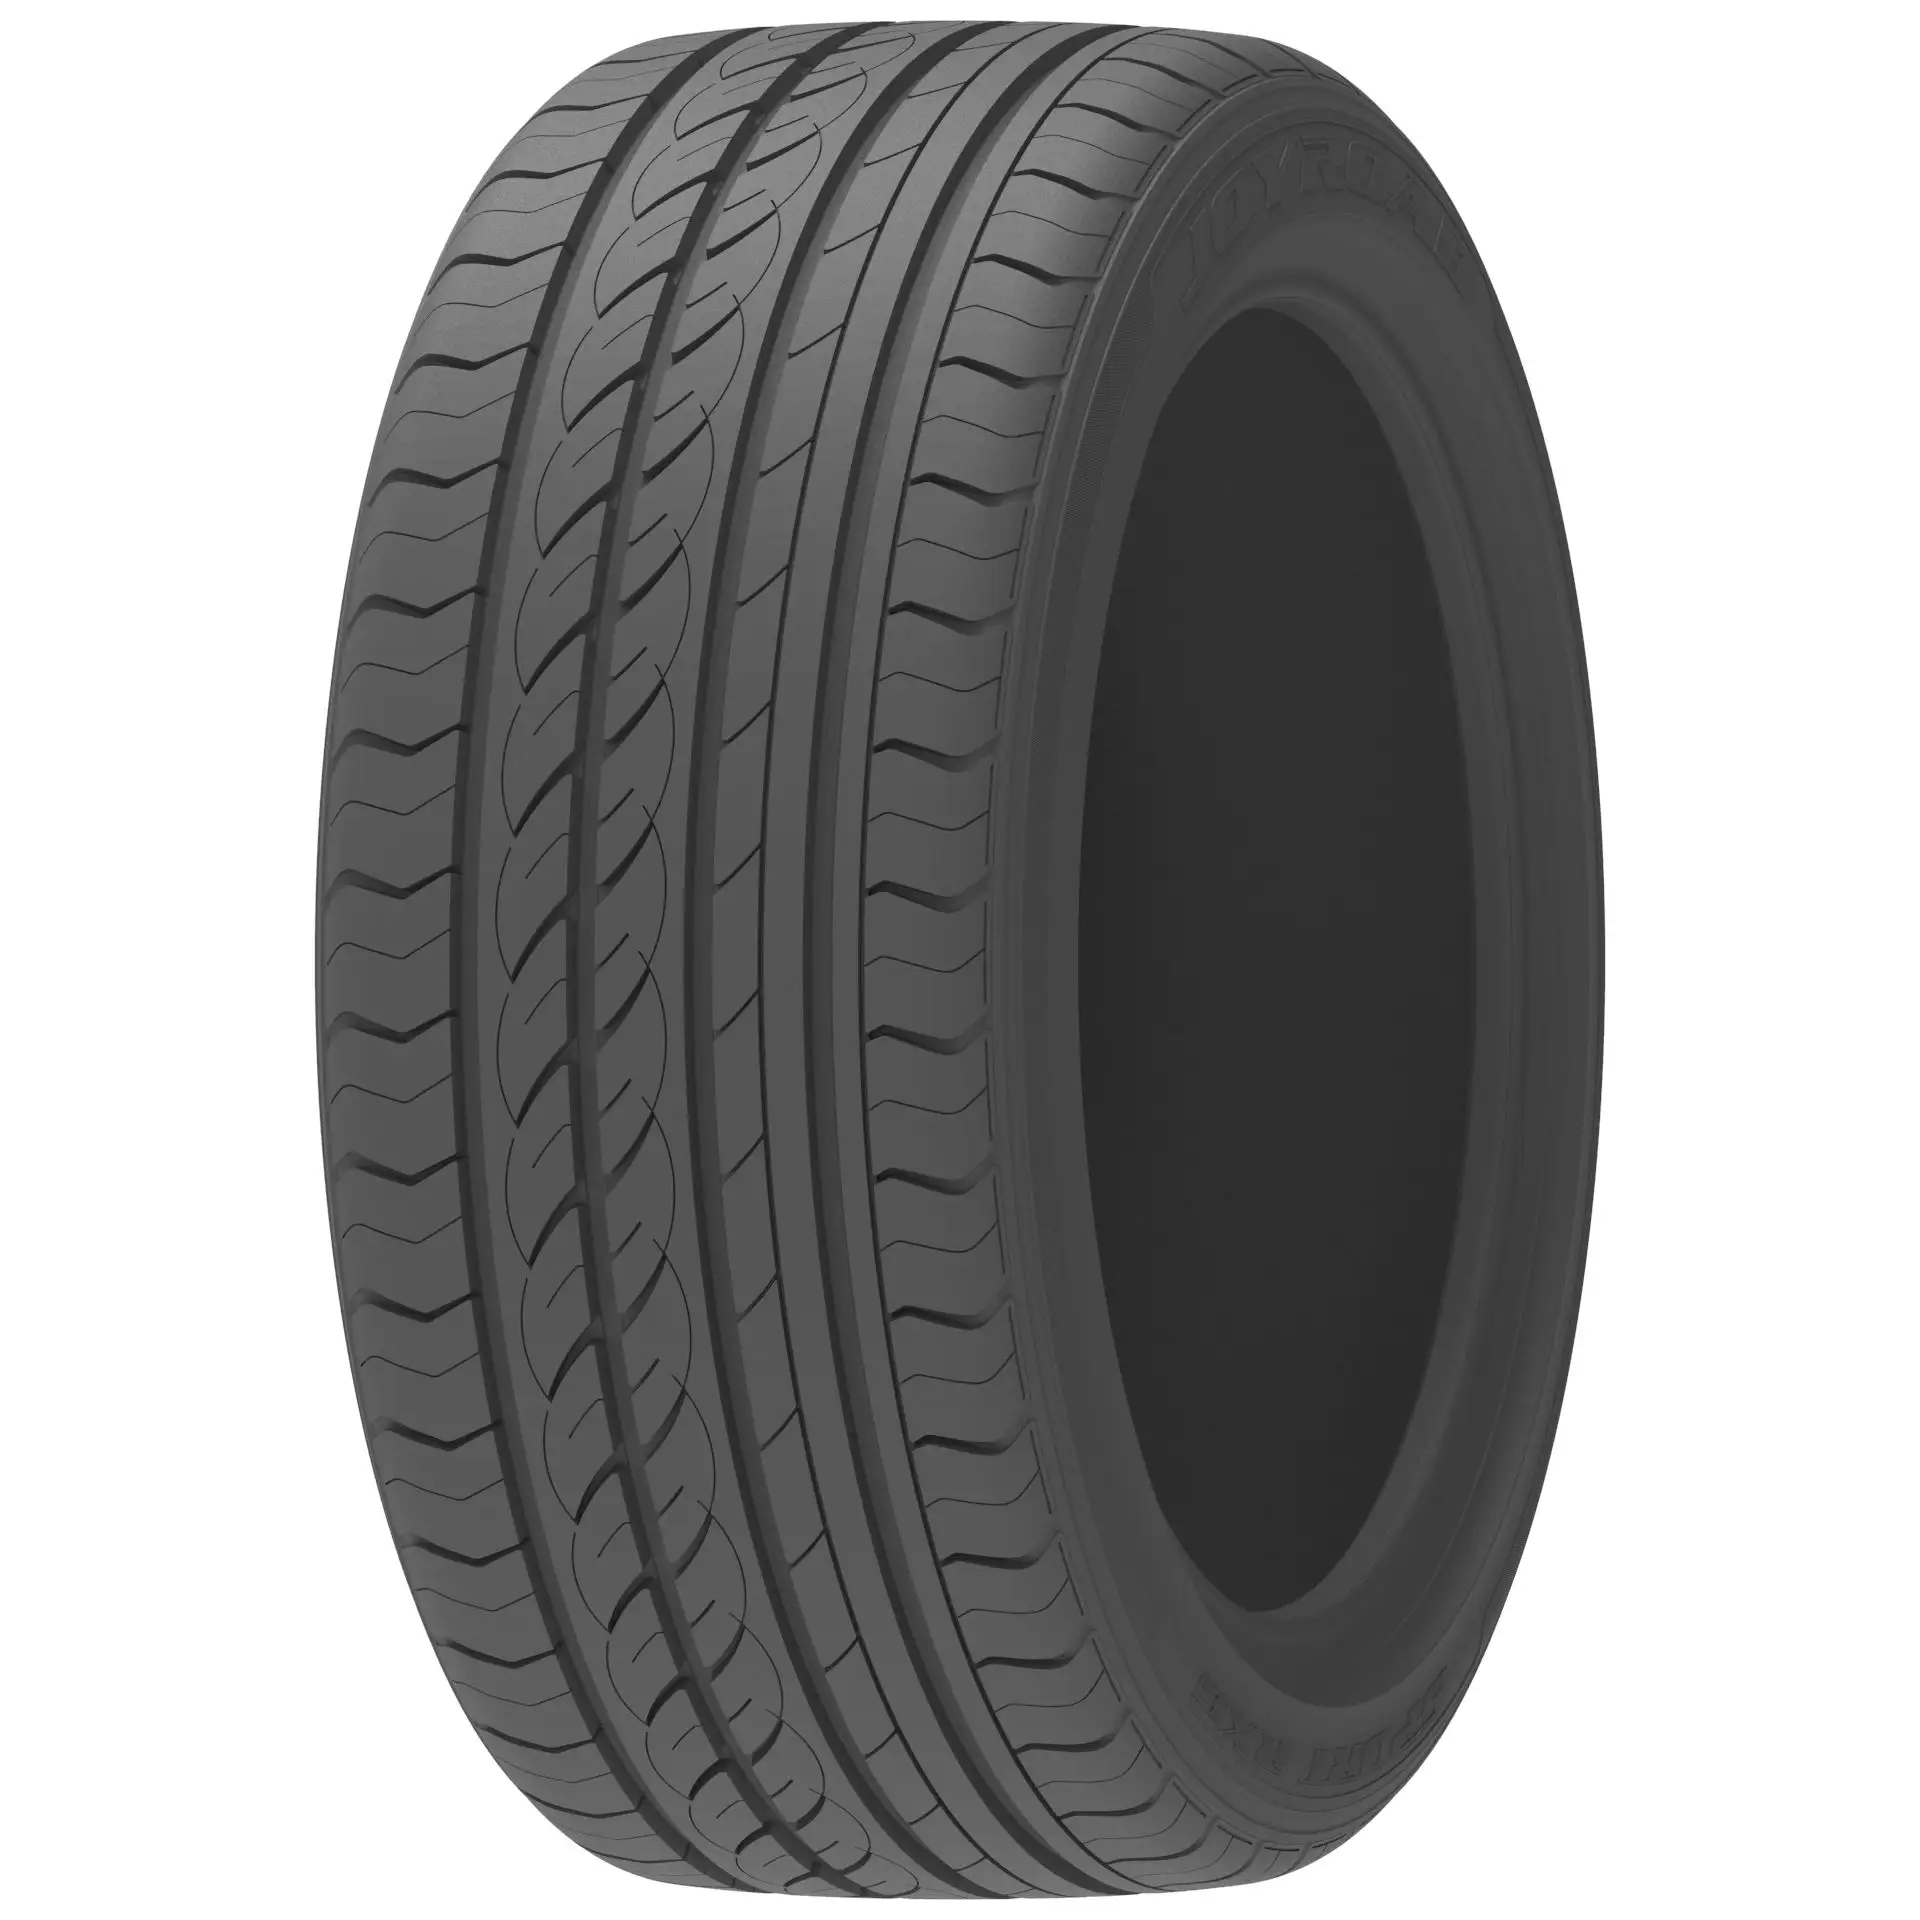 Passenger car wheels & tires wholesale R13 R14 R15 R16 R17 R18 R19 R20